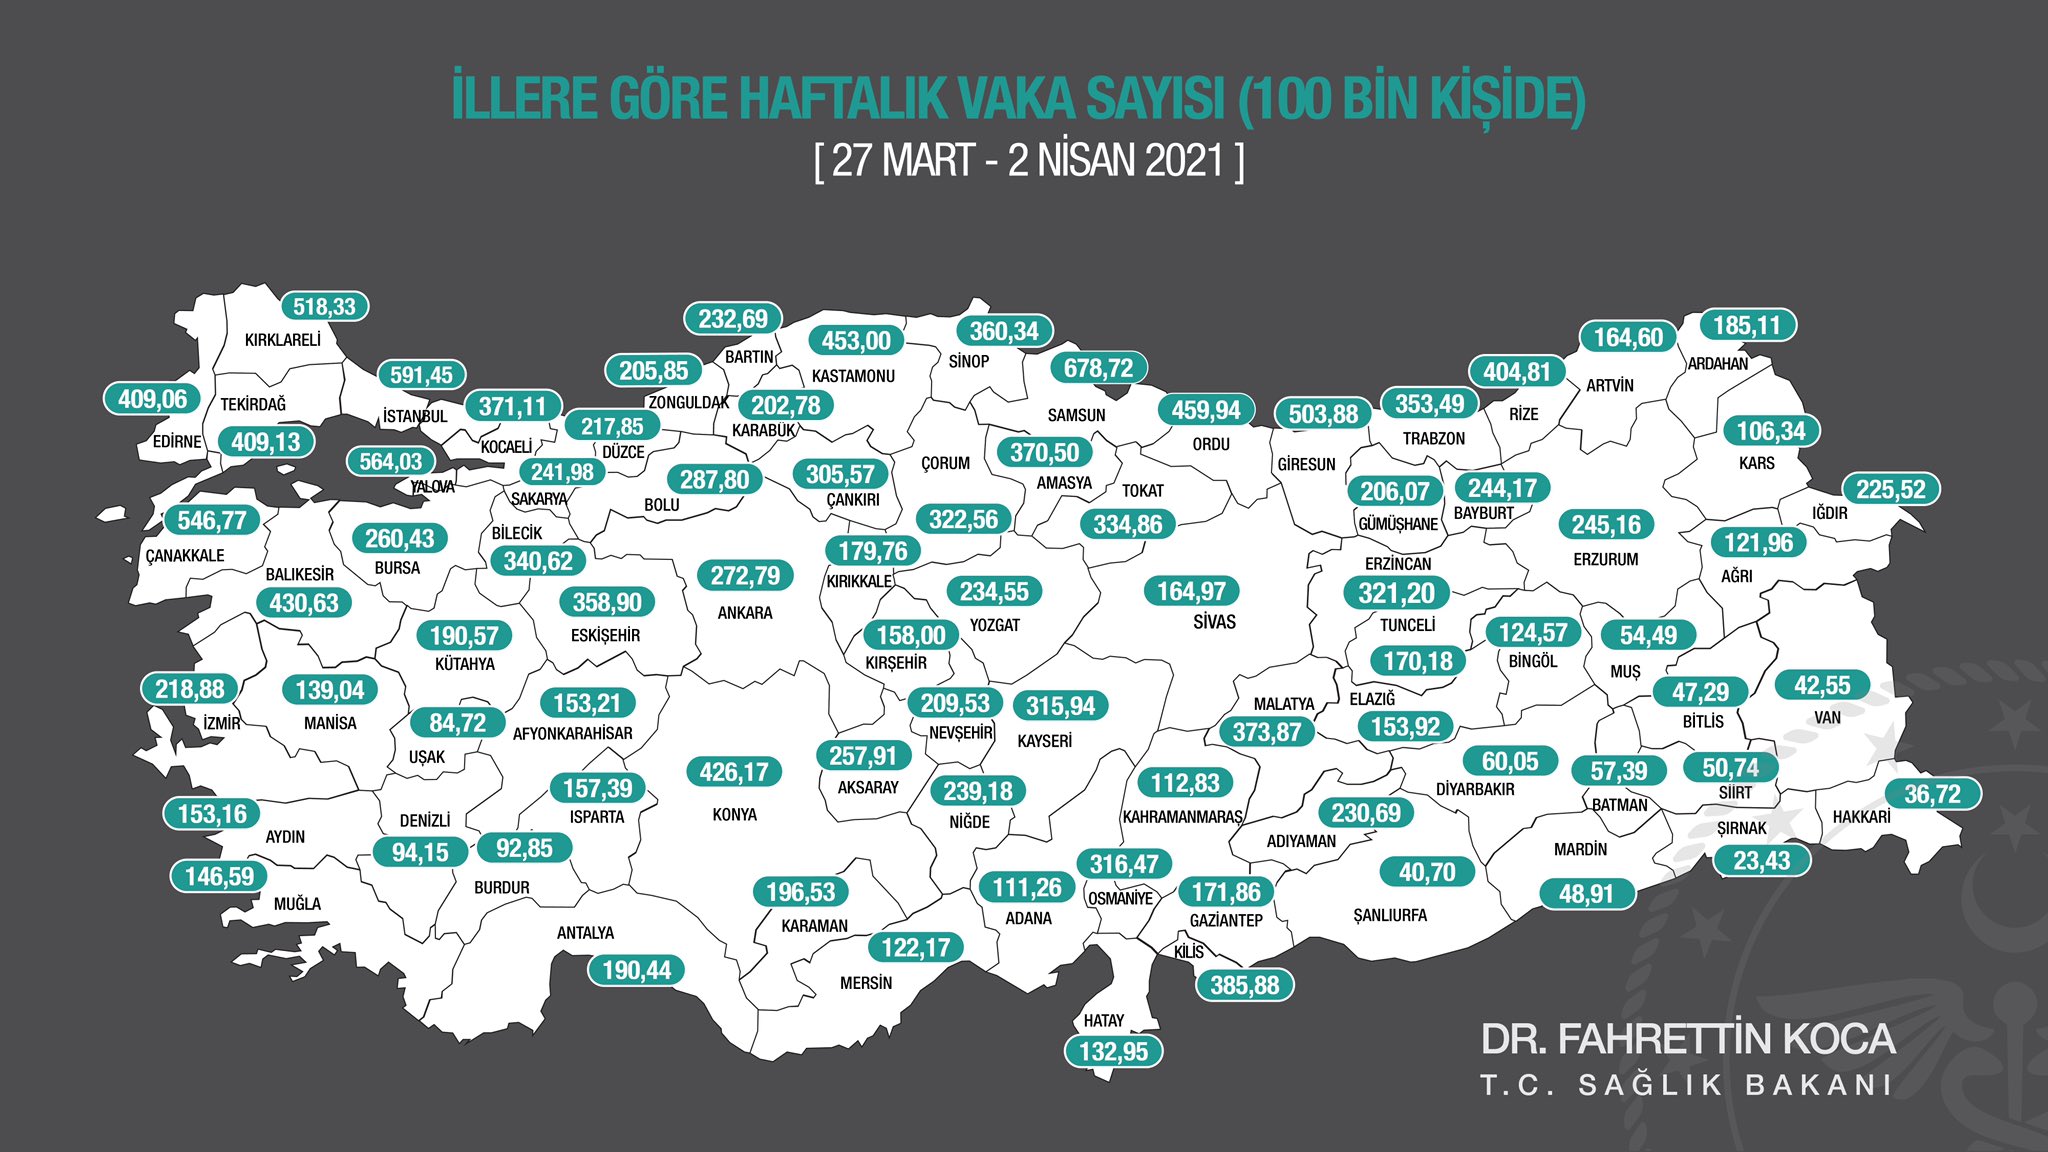 İllere göre haftalık Kovid-19 vaka sayısı, her 100 bin kişide İstanbul'da 591,45, Ankara'da 272,79, İzmir'de 218,88 oldu.